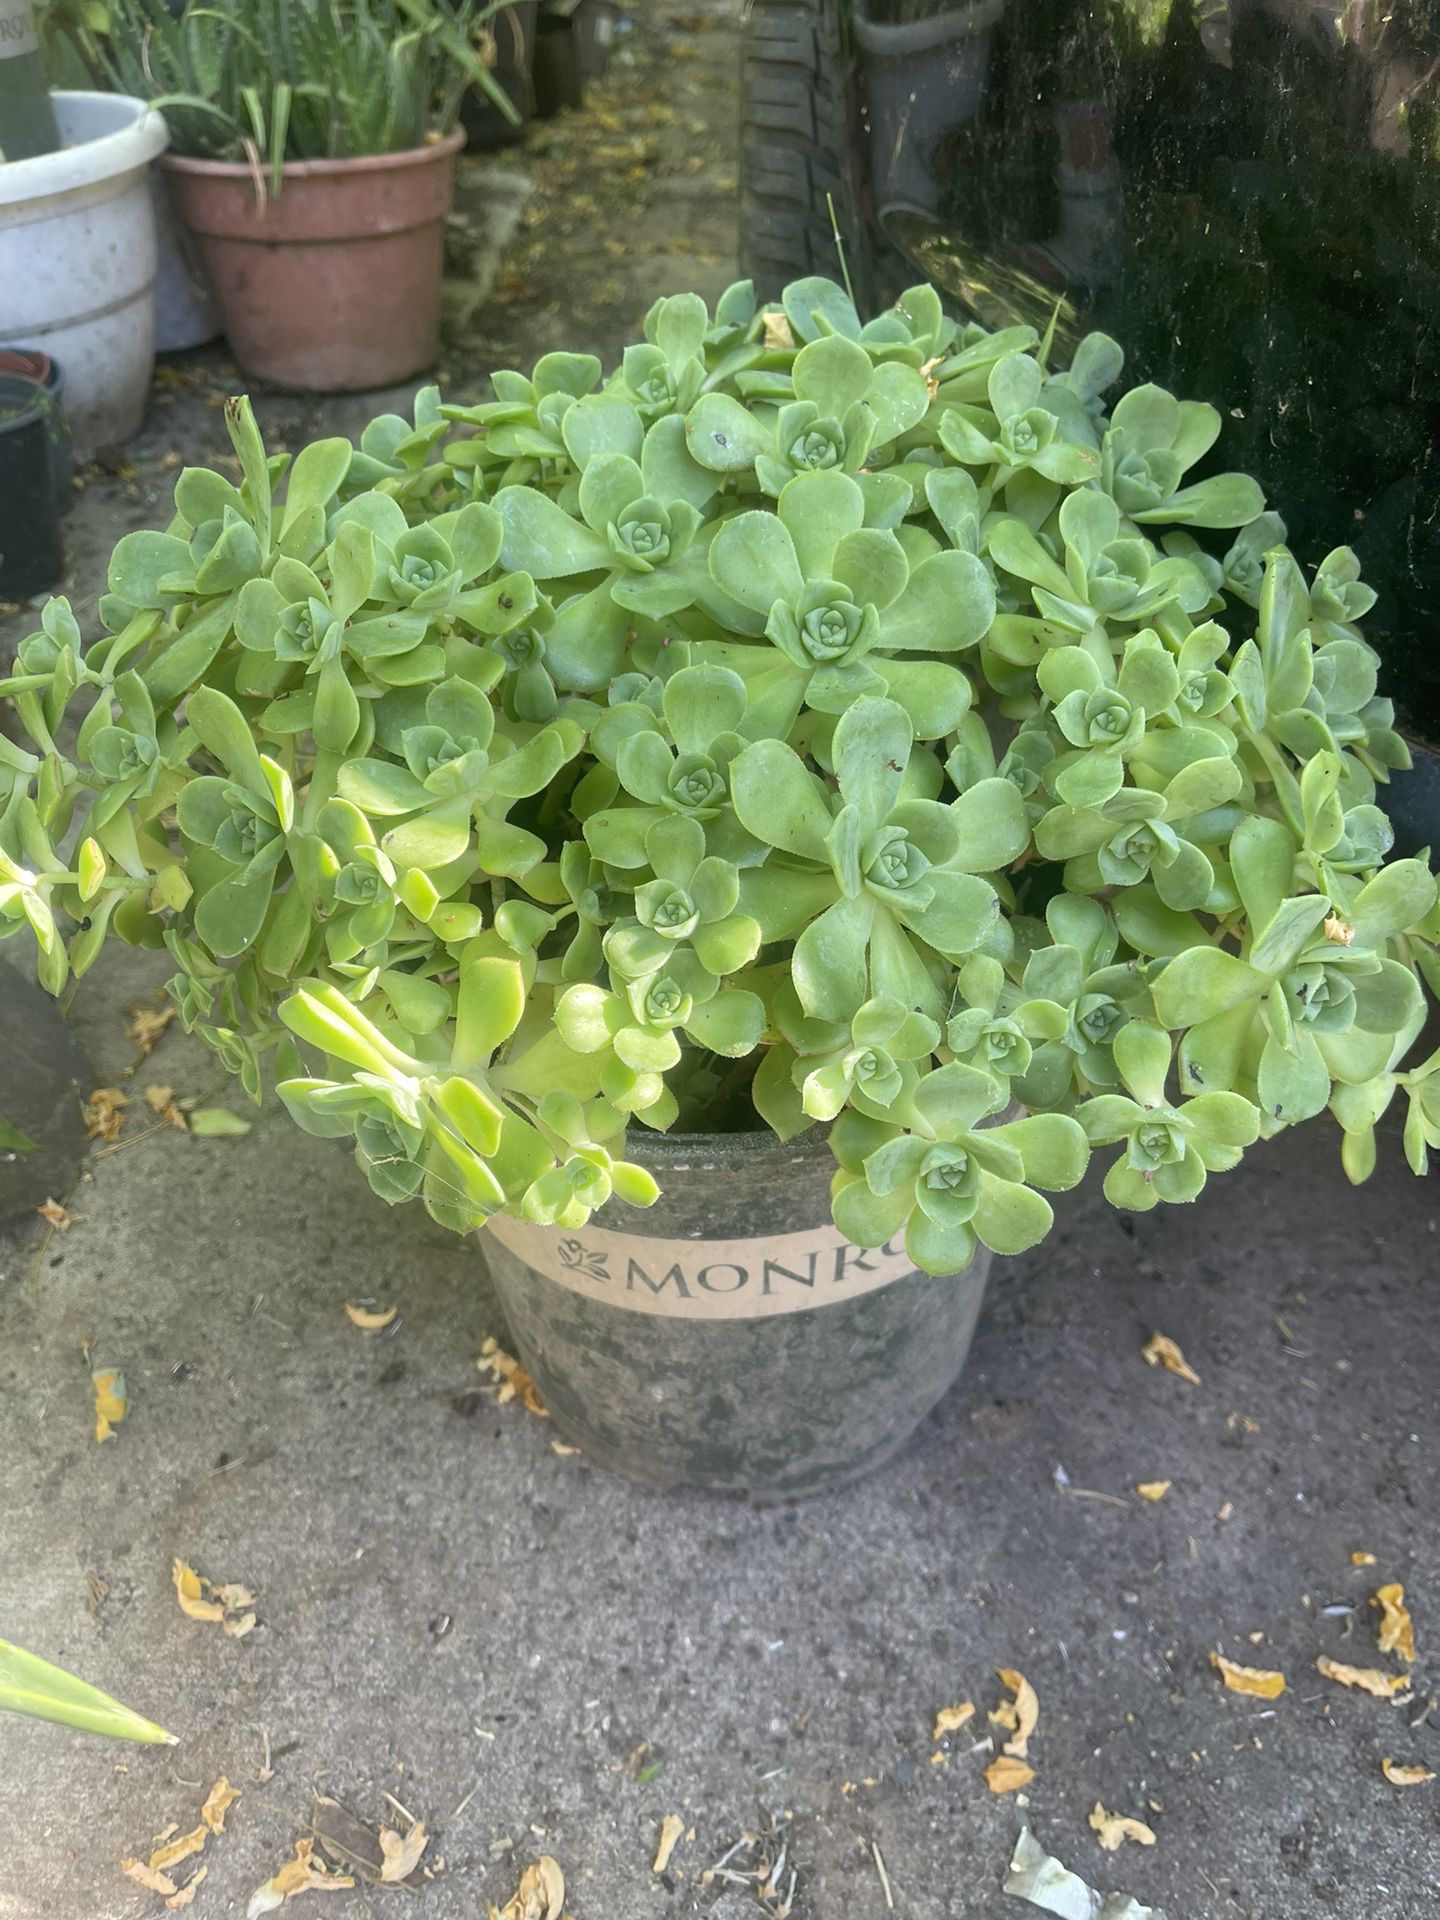 Succulent Plant $8